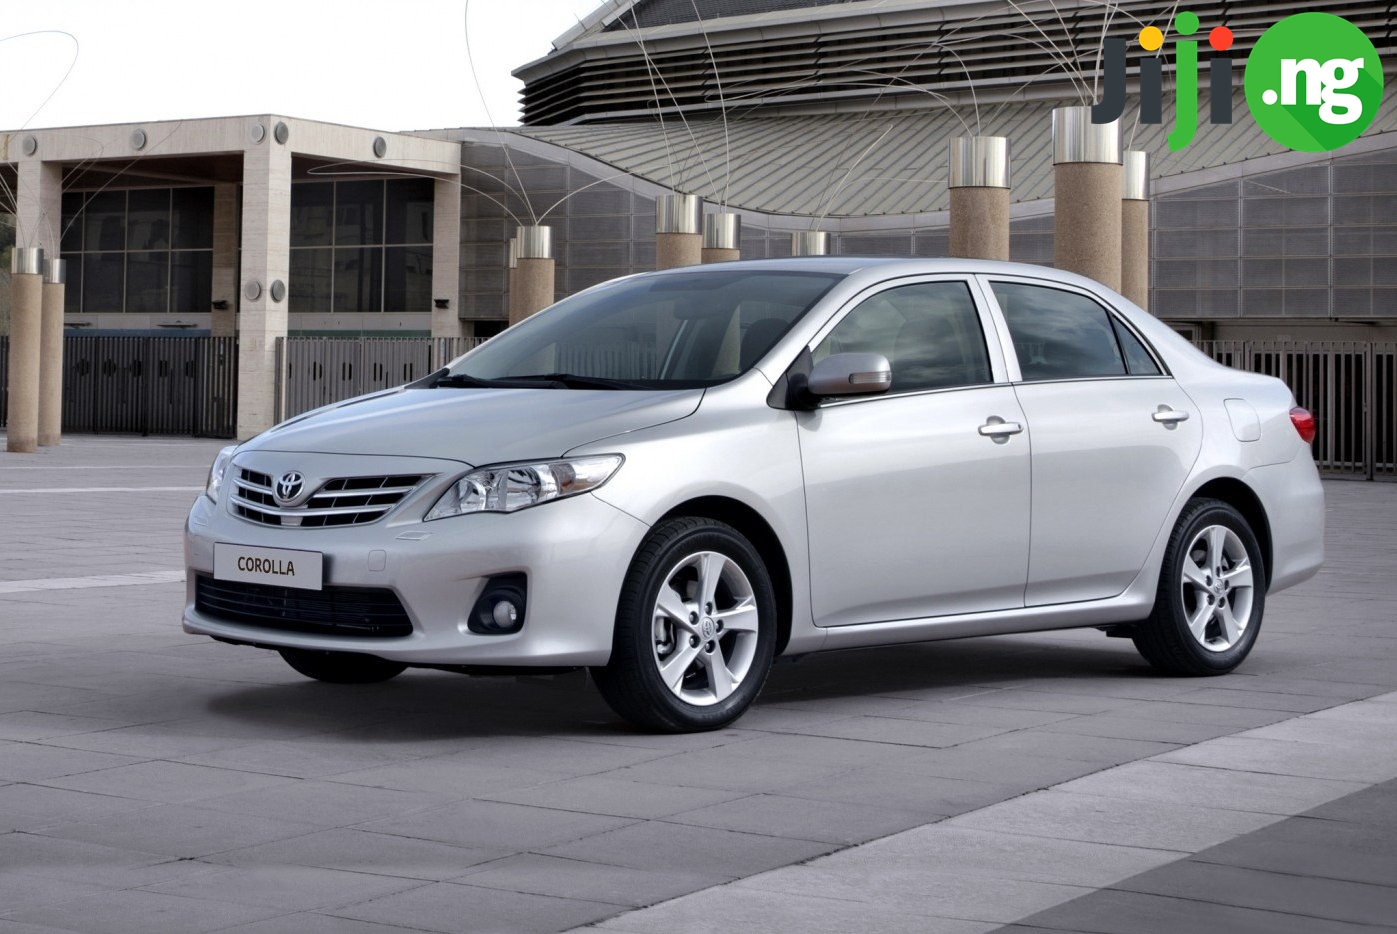 Toyota Corolla 2010 price in Nigeria